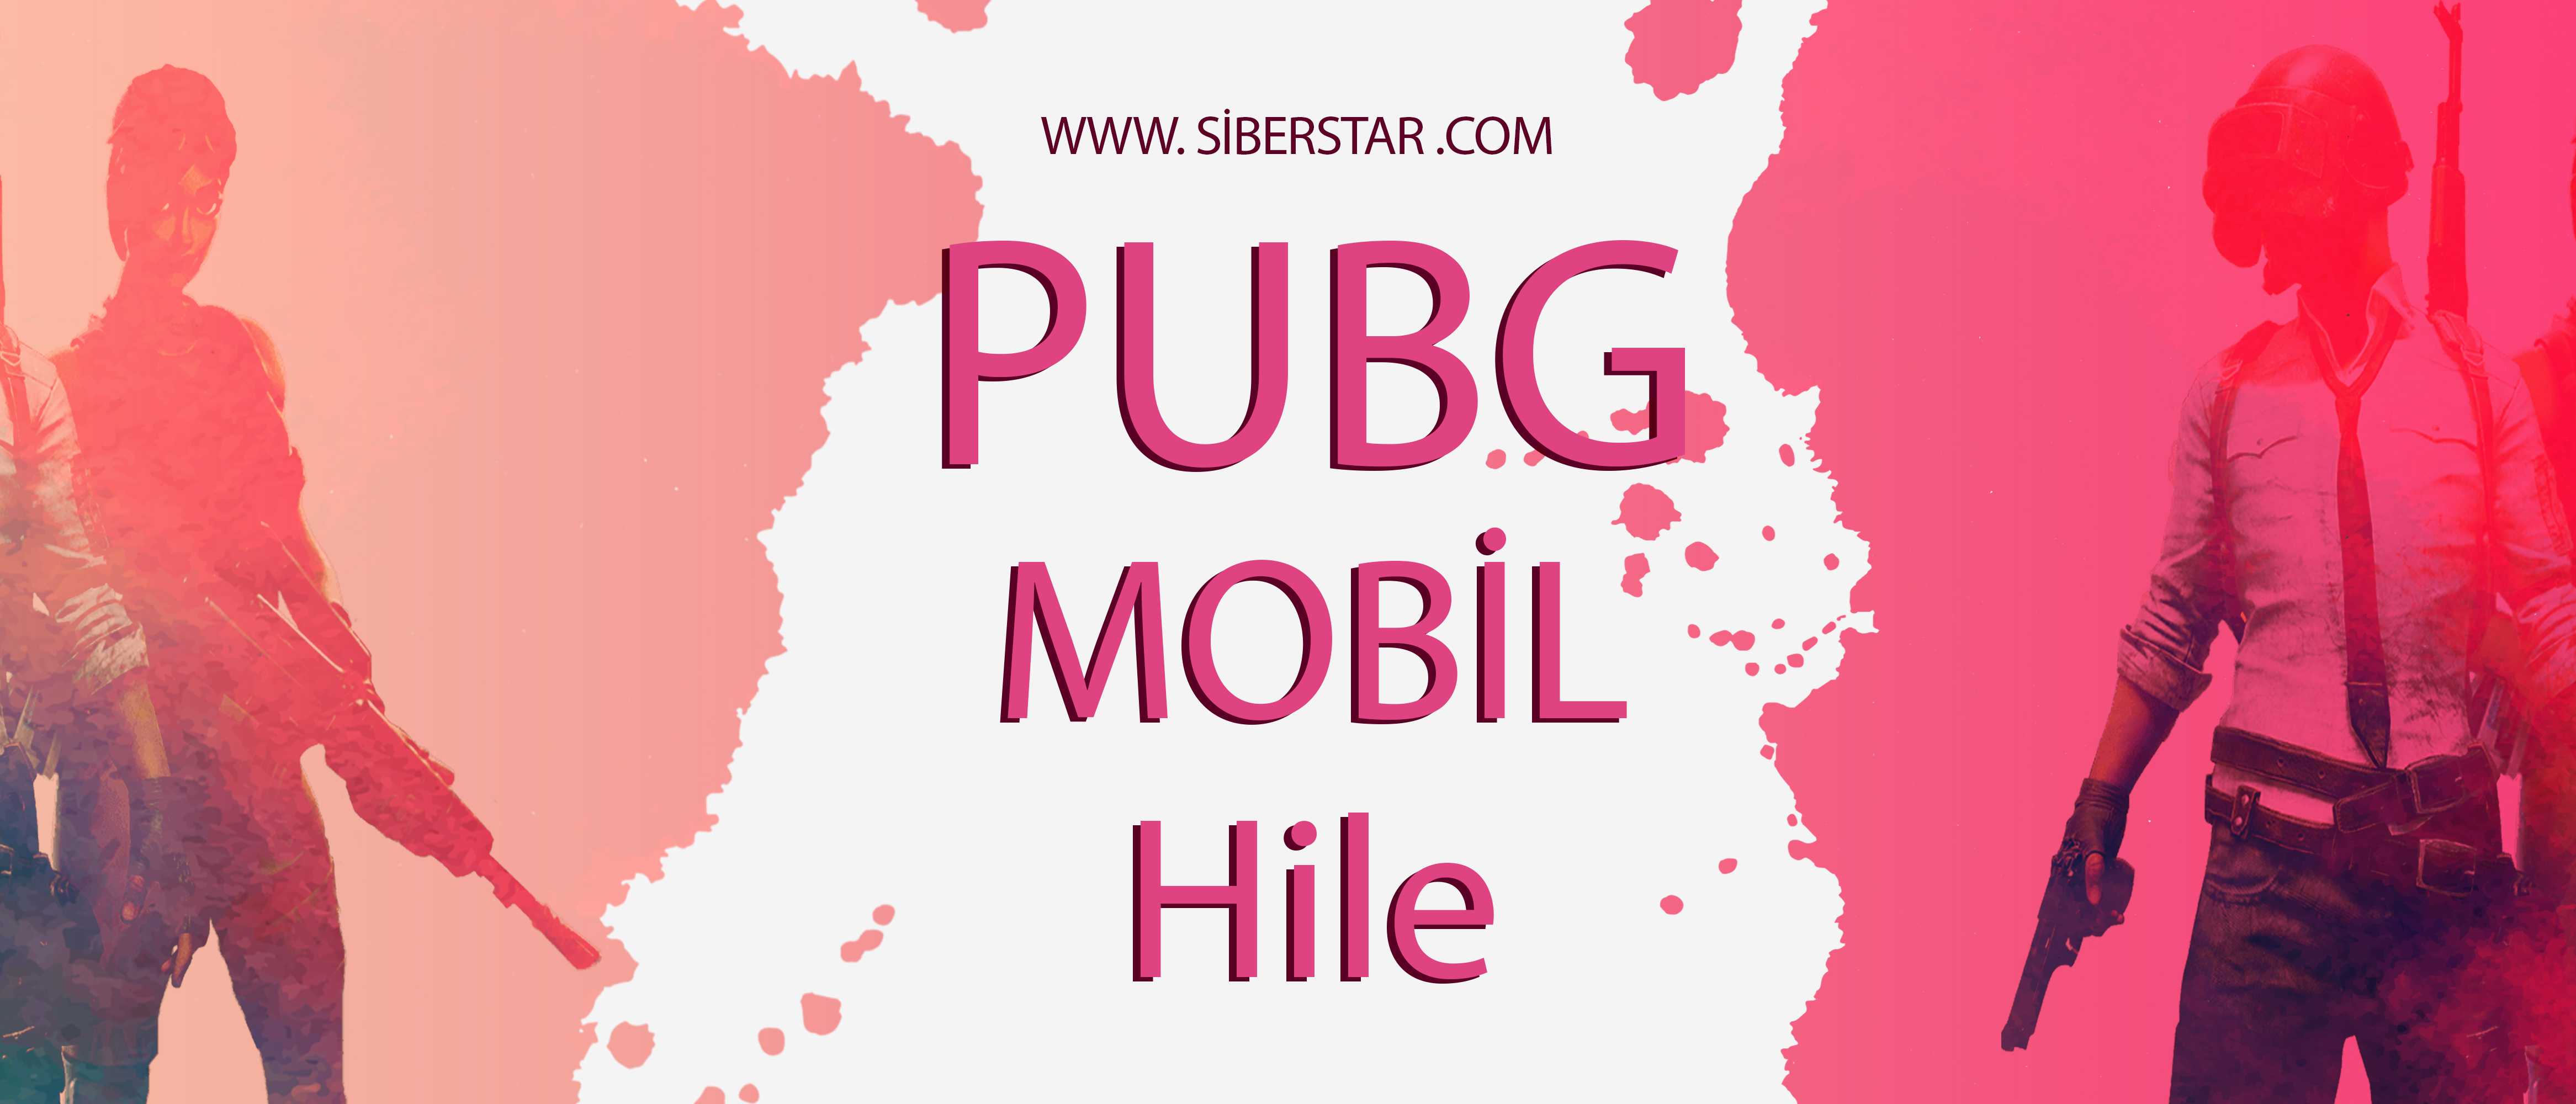 PUBG Mobil Hile 2019